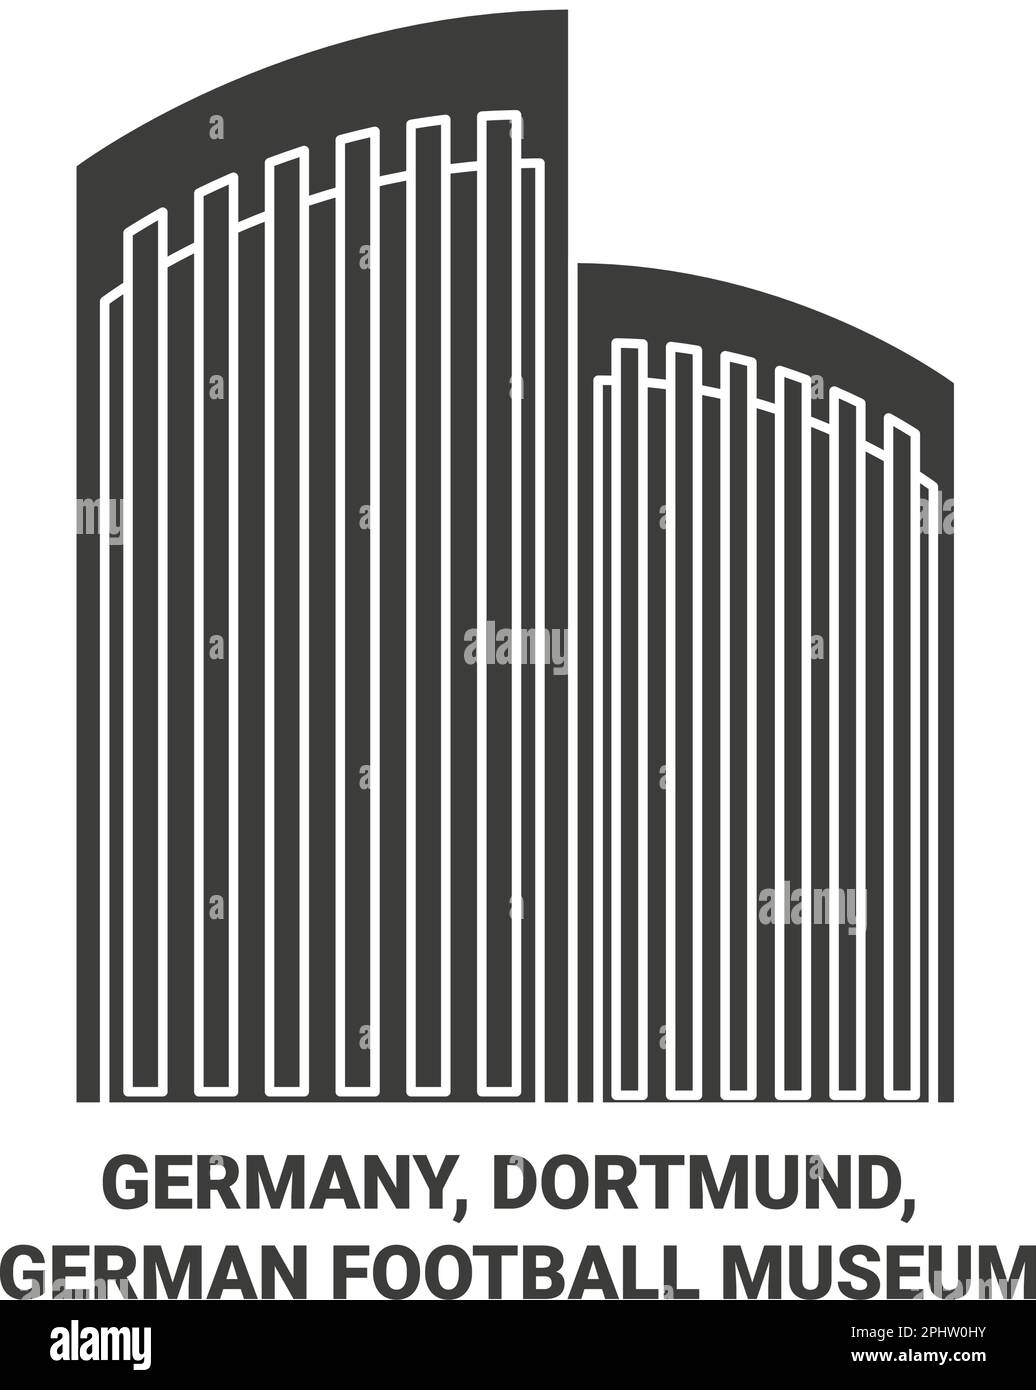 Allemagne, Dortmund, Musée allemand du football illustration vectorielle de voyage Illustration de Vecteur